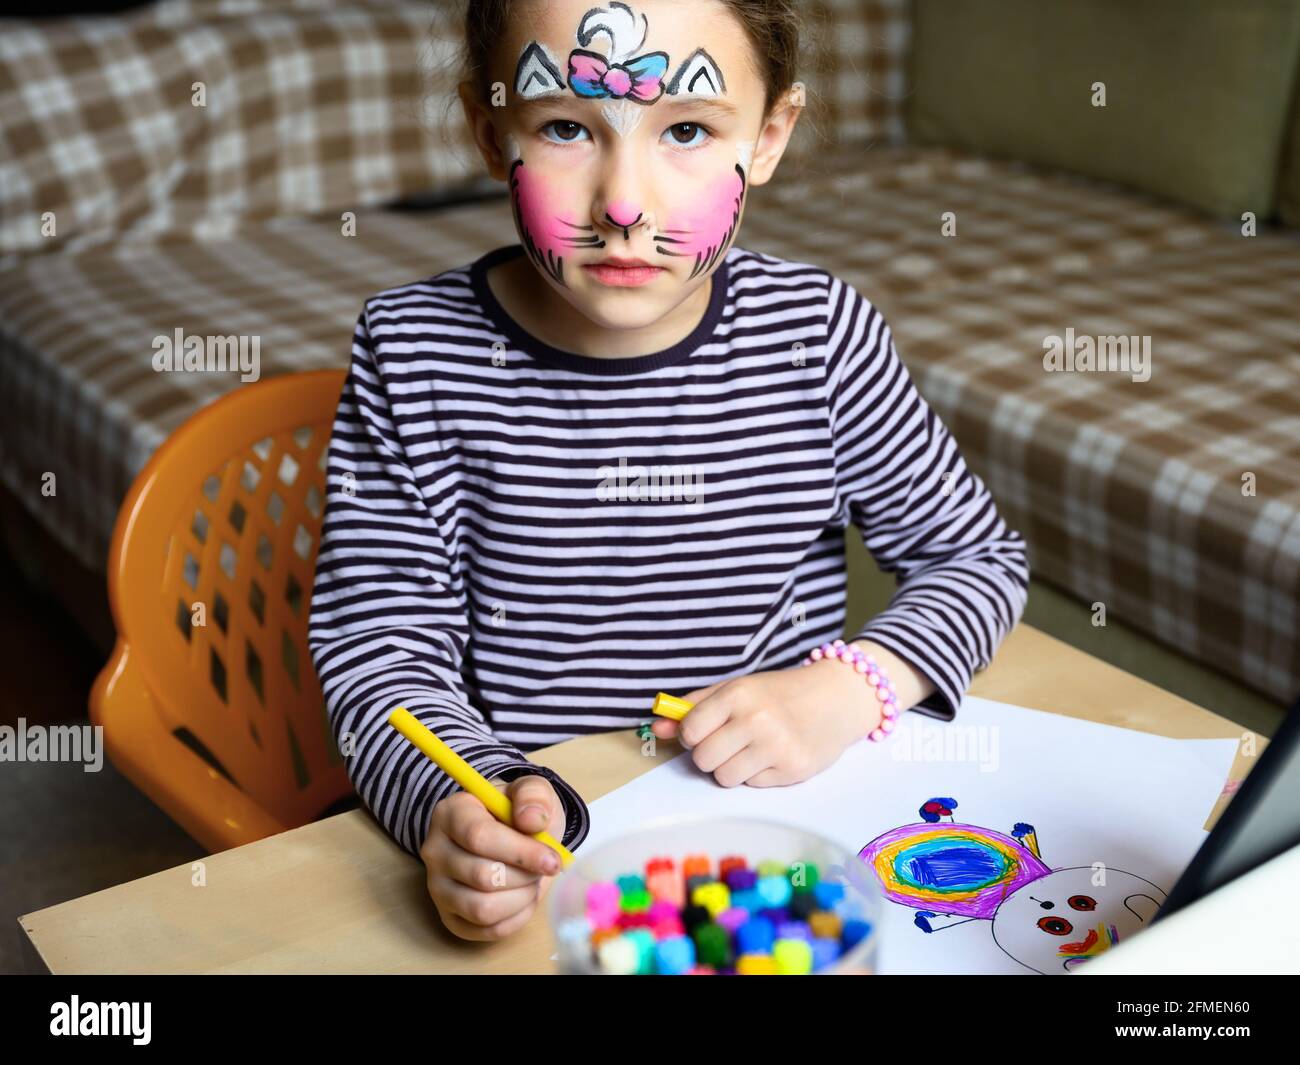 Kinderzeichnung mit Filzstiften innen, kleines Mädchen mit gemalter Maske im Gesicht, das zu Hause studiert. Niedliches Kind lernt am Tisch im Zimmer zu zeichnen. Porträt von Stockfoto